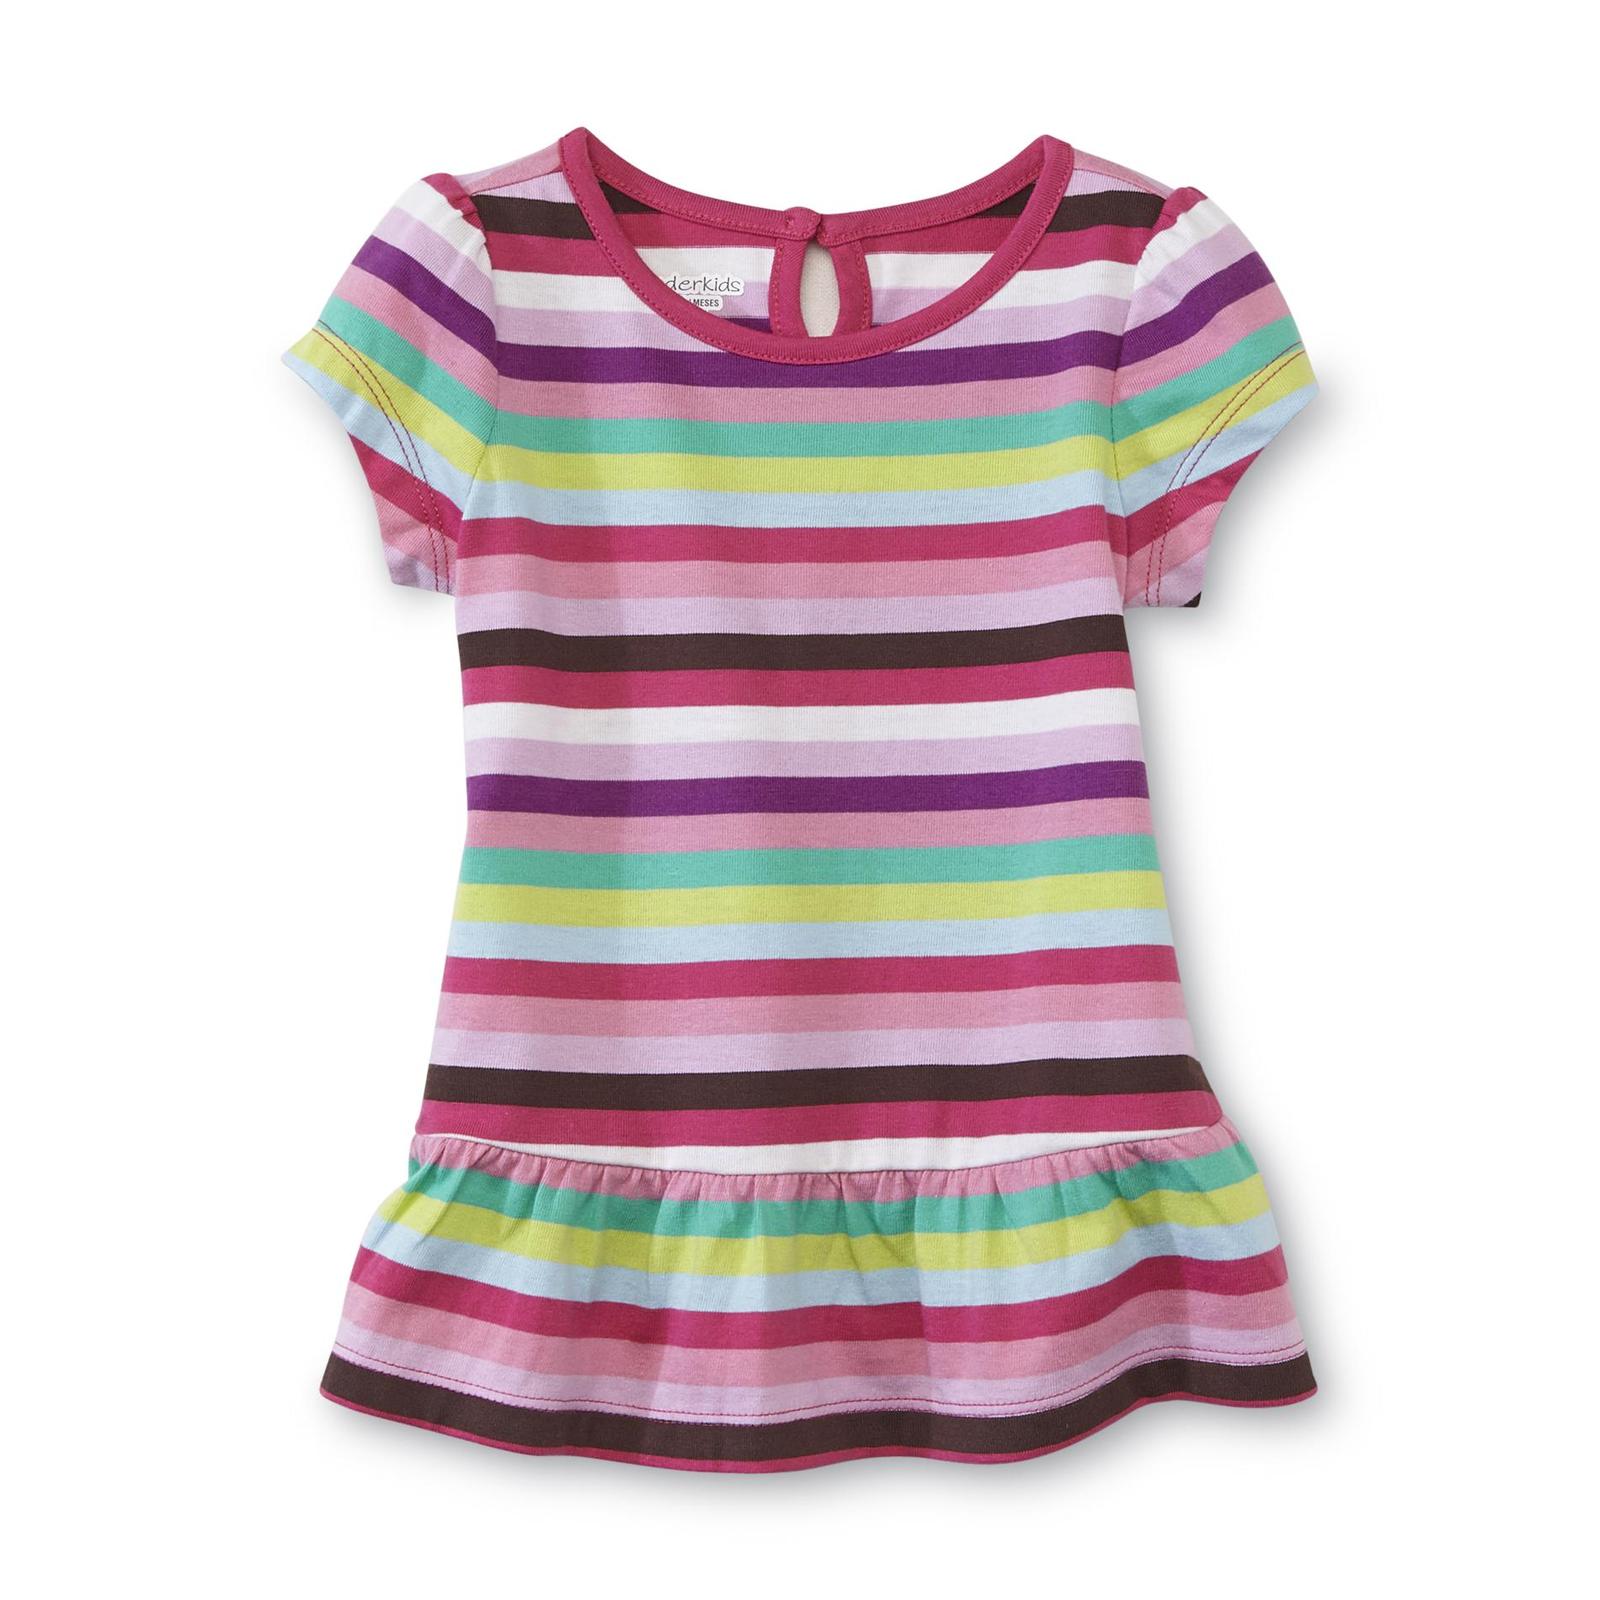 WonderKids Infant & Toddler Girl's Short-Sleeve Peplum Top - Striped